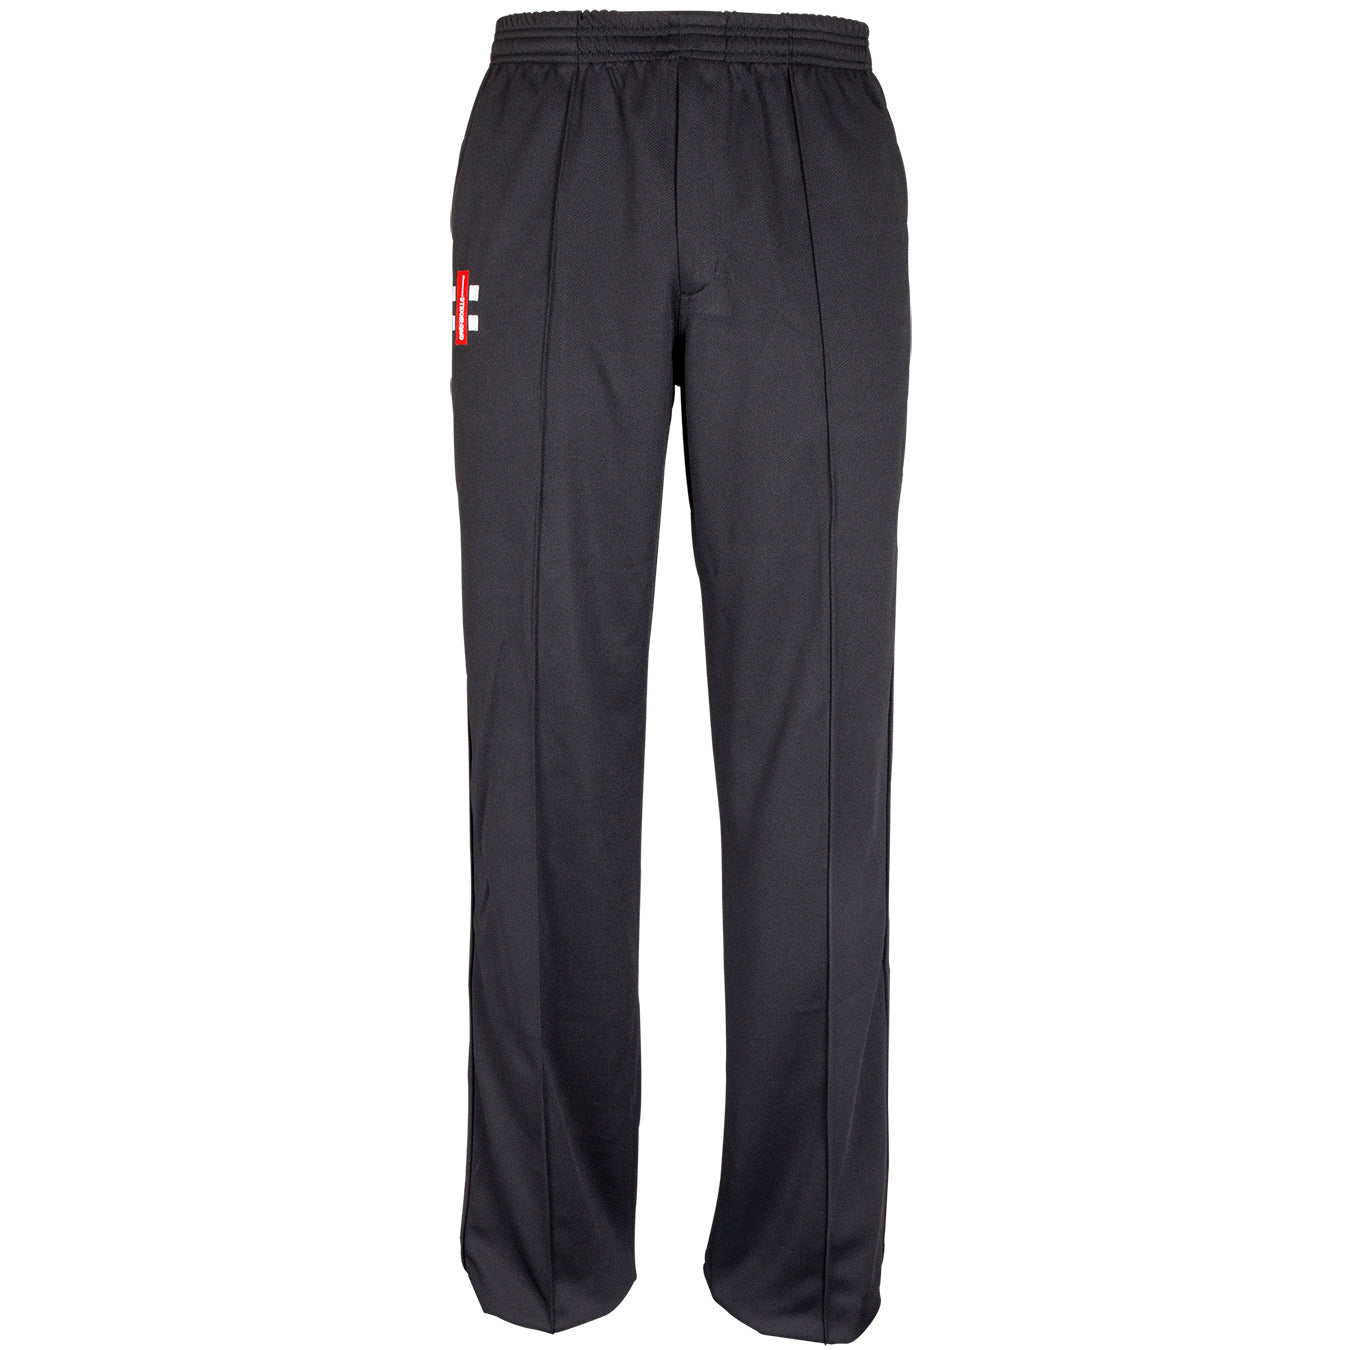 Sublimation Cricket Pants  Pants Cricket trousers Clothes